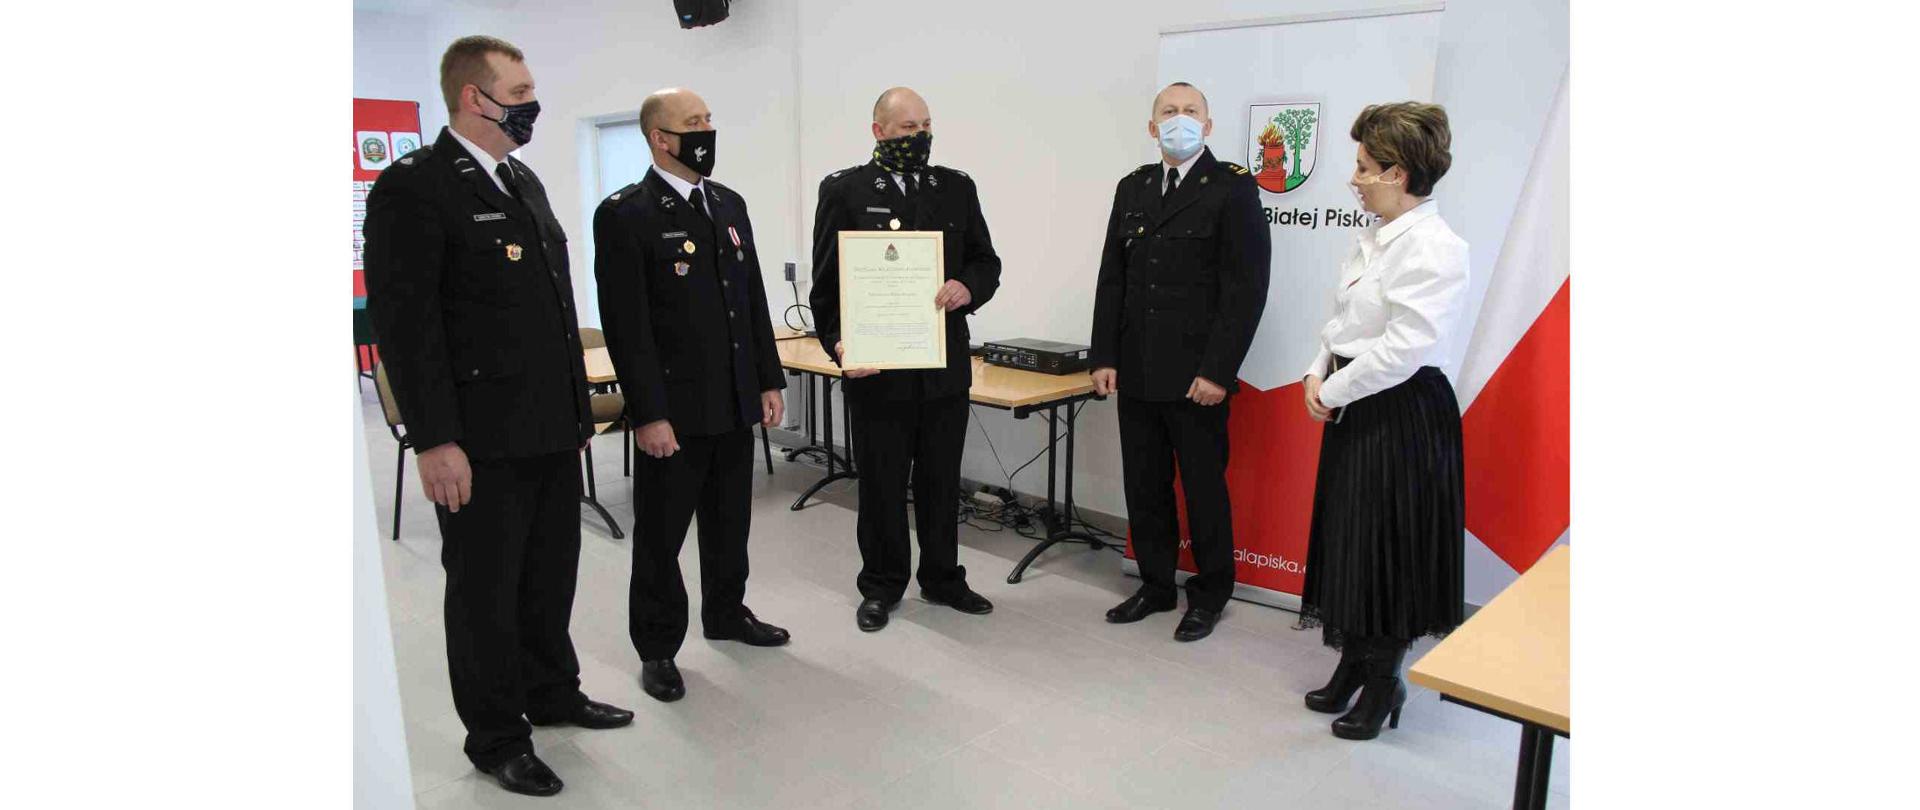 Burmistrz Białej Piskiej oraz czterech strażaków stojących w pomieszczeniu. jeden z nich trzyma decyzję Komendanta Głównego PSP o włączeniu jednostki OSP Skarżyn do Krajowego Systemu Ratowniczo-Gaśniczego.